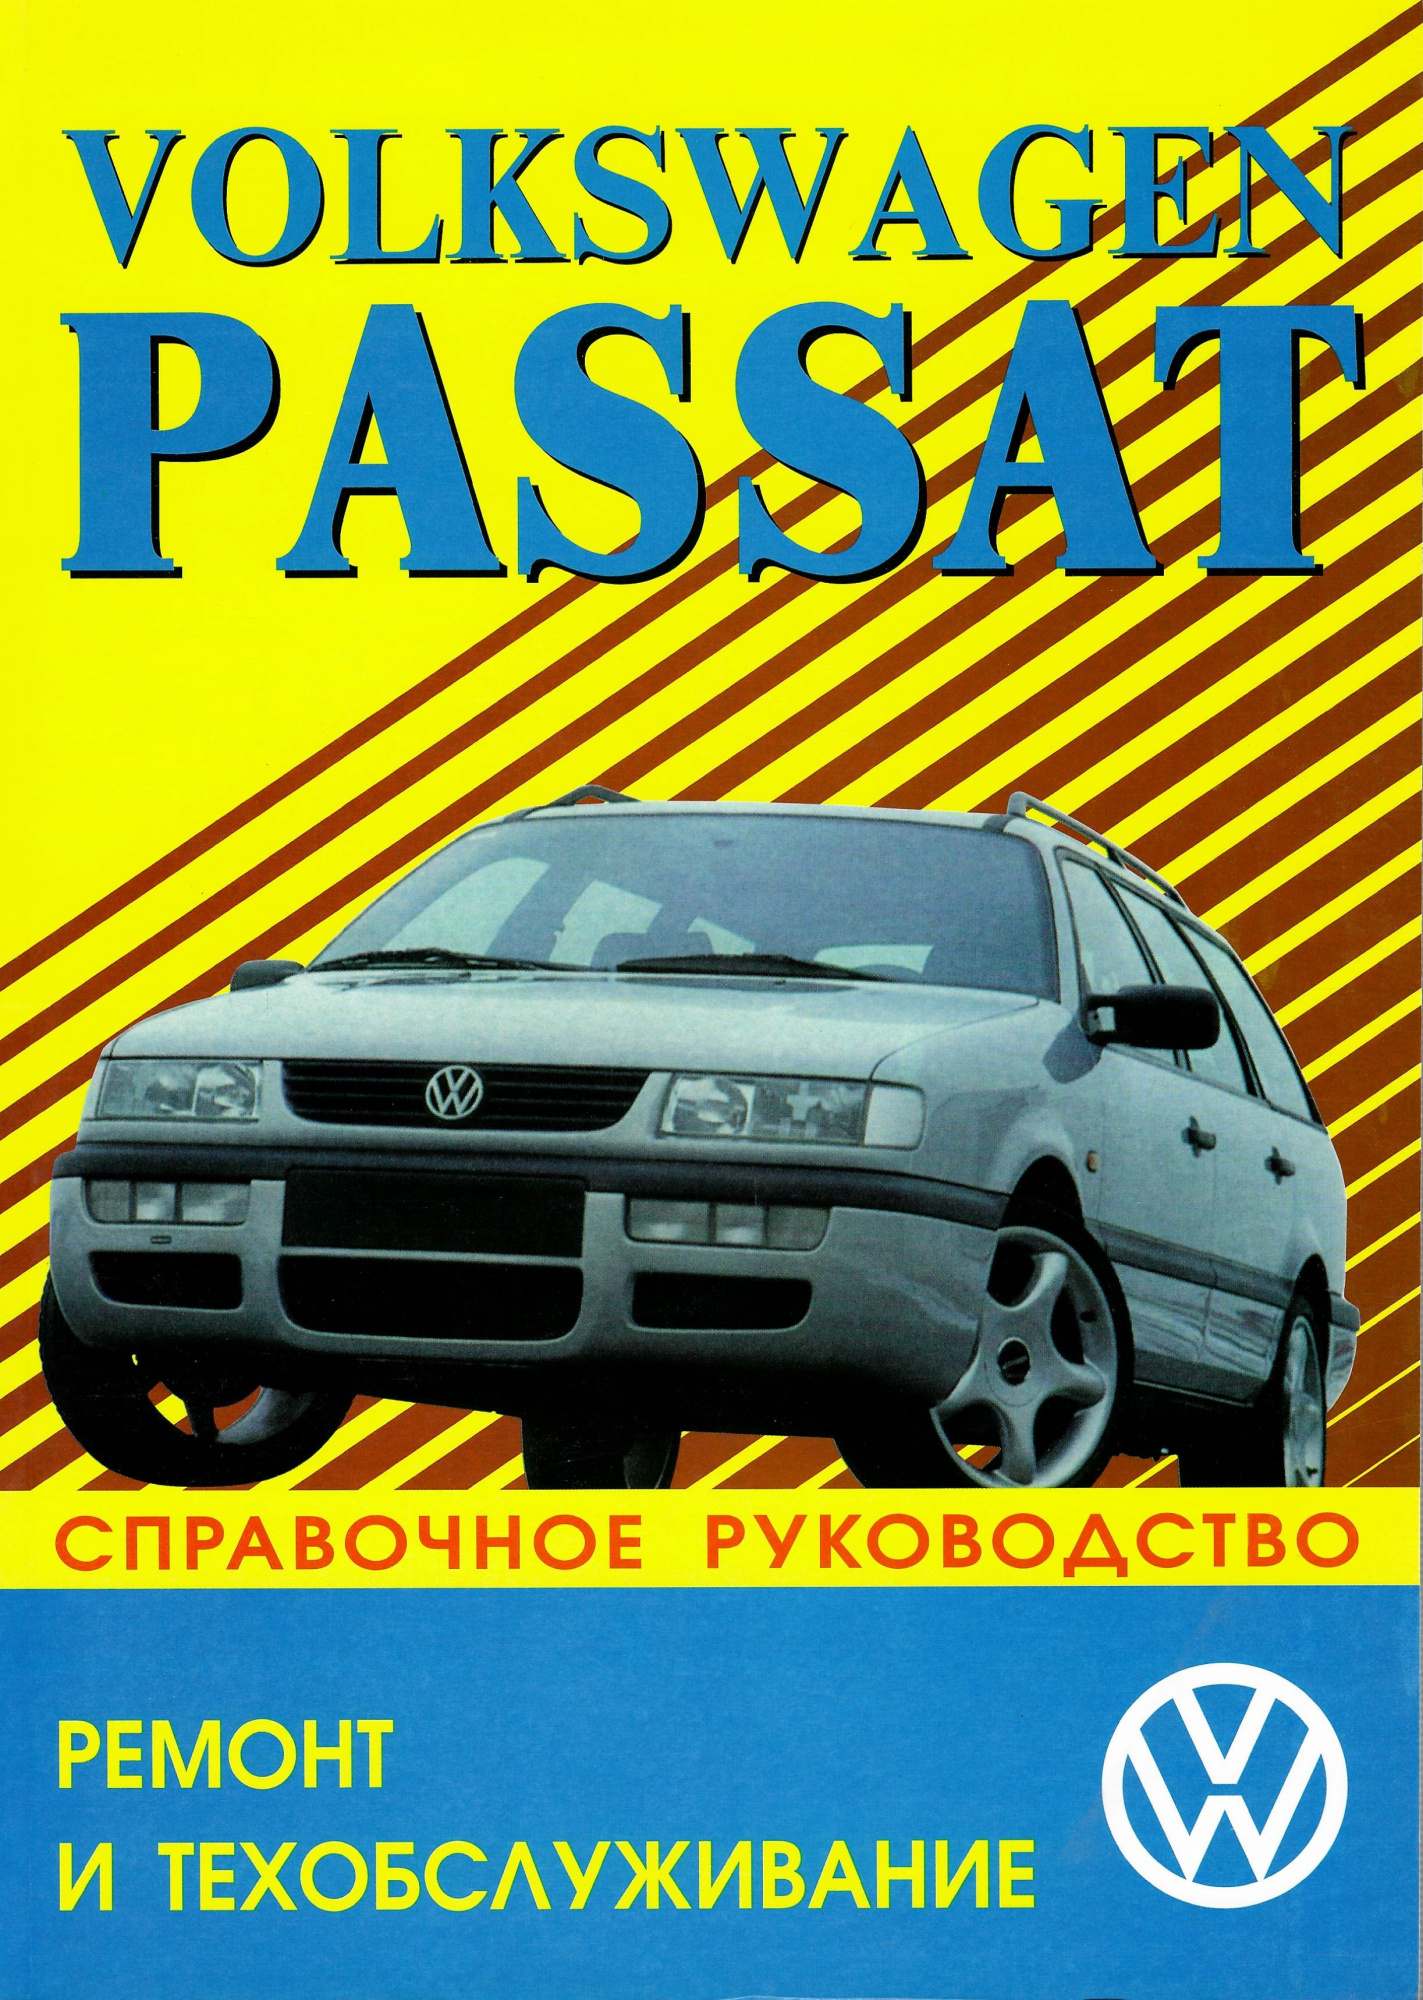 Volkswagen Passat 1988-1996. Книга, руководство по ремонту и ТО. Машсервис